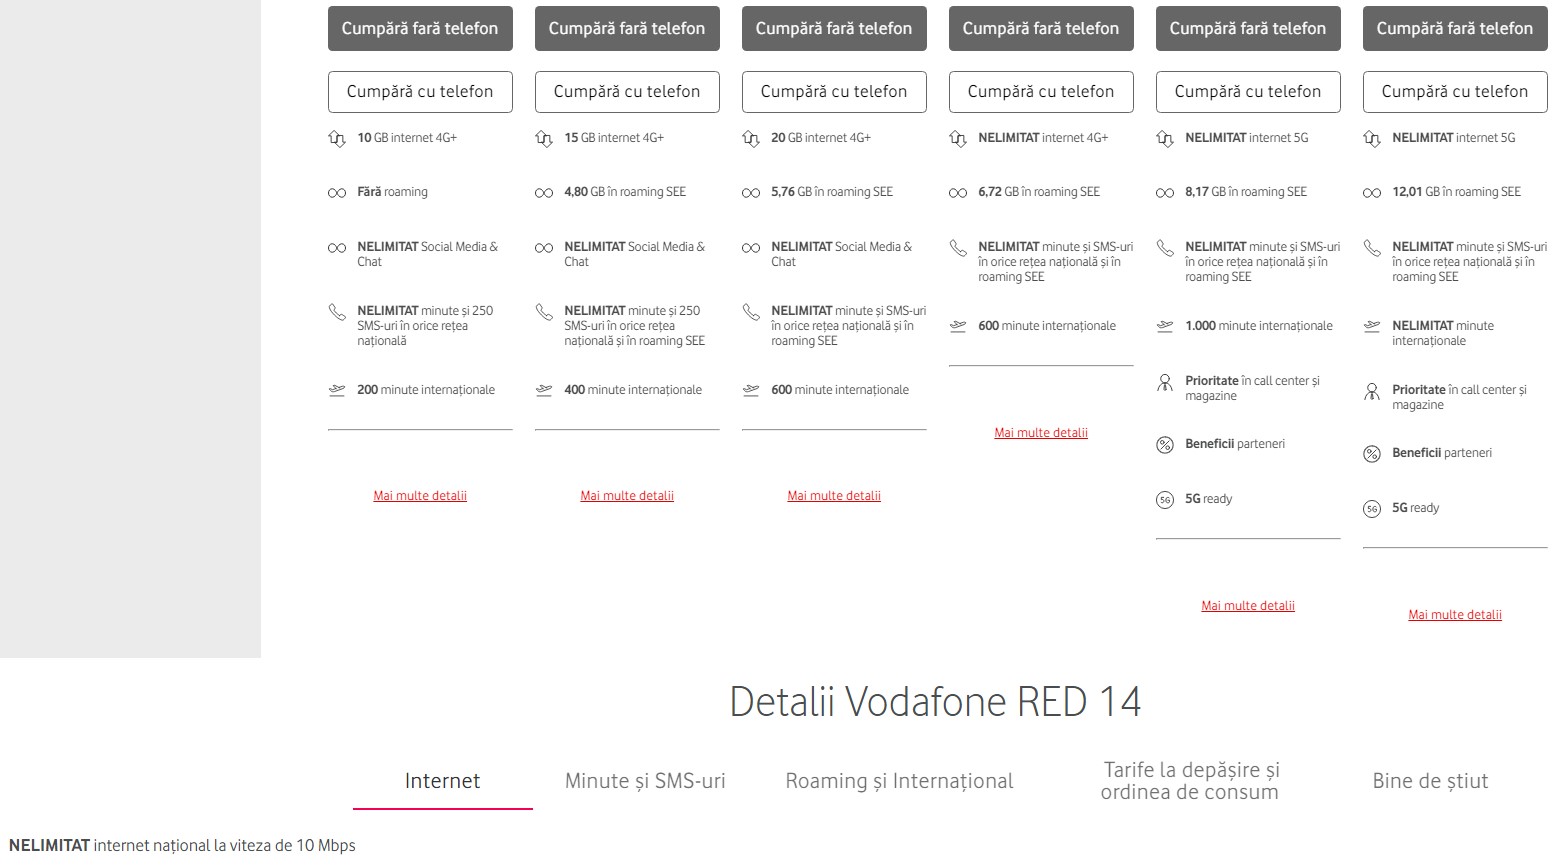 Vodafone limitare internet nelimitat